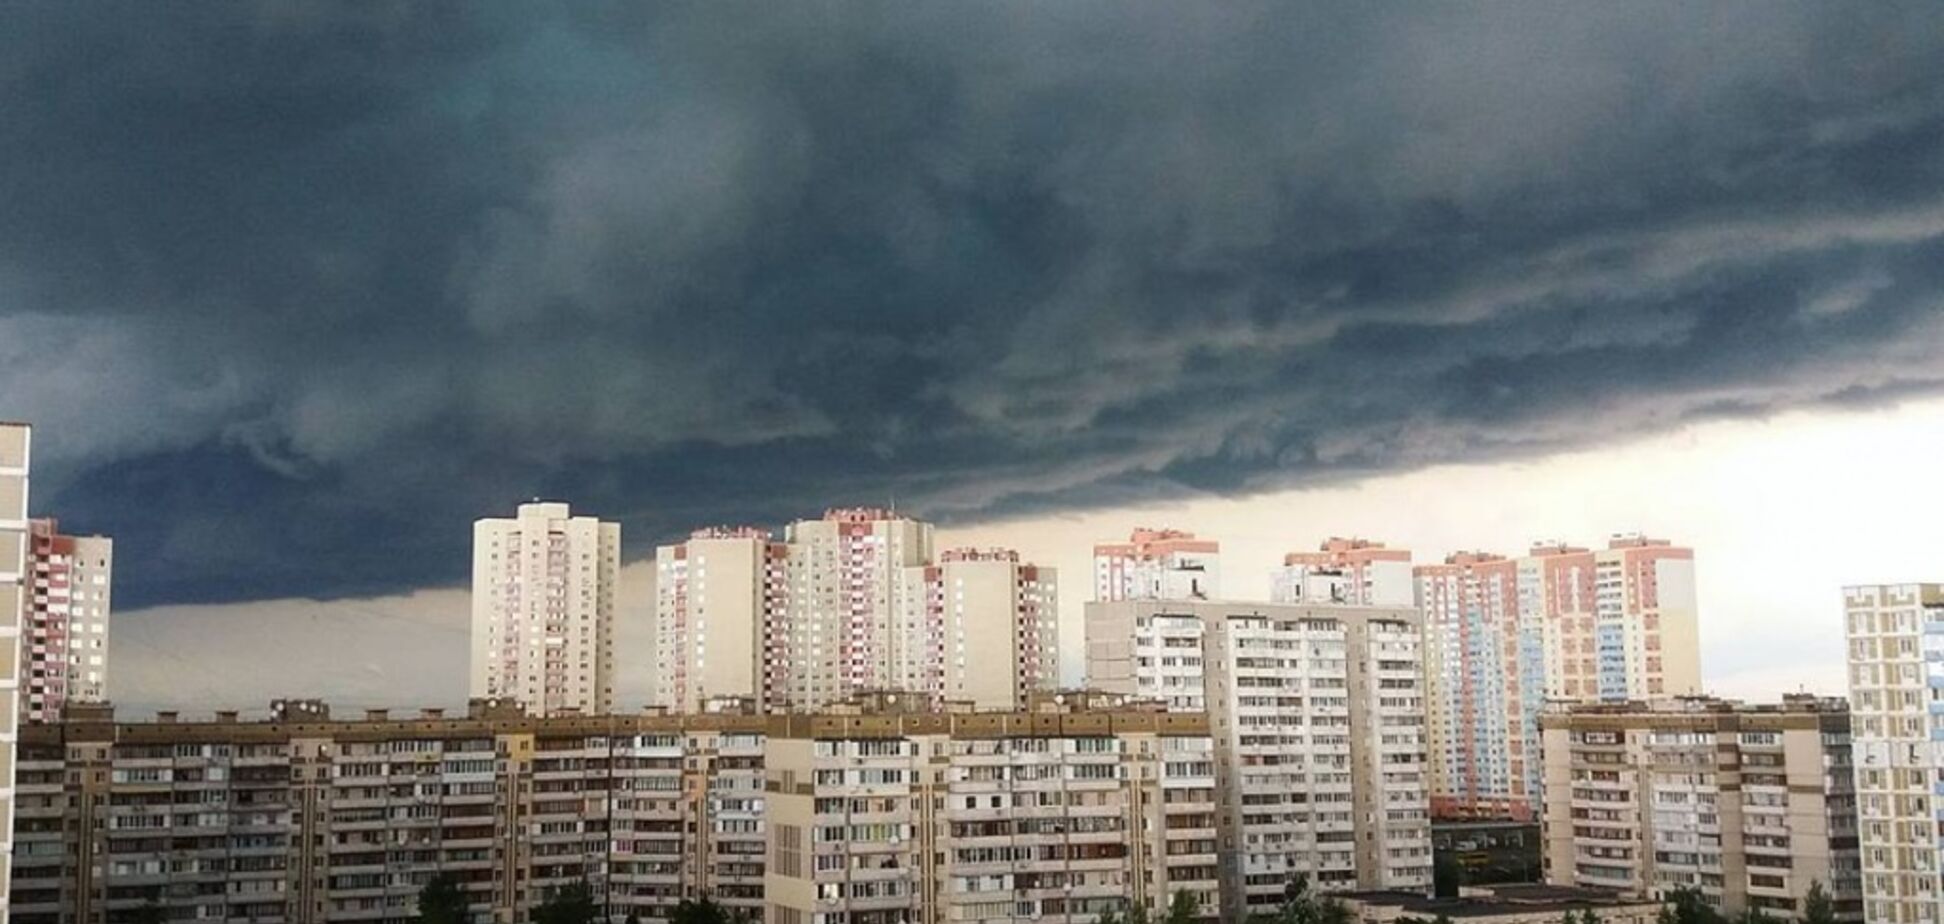 +36 и сильные грозы: синоптик уточнила прогноз погоды в Украине